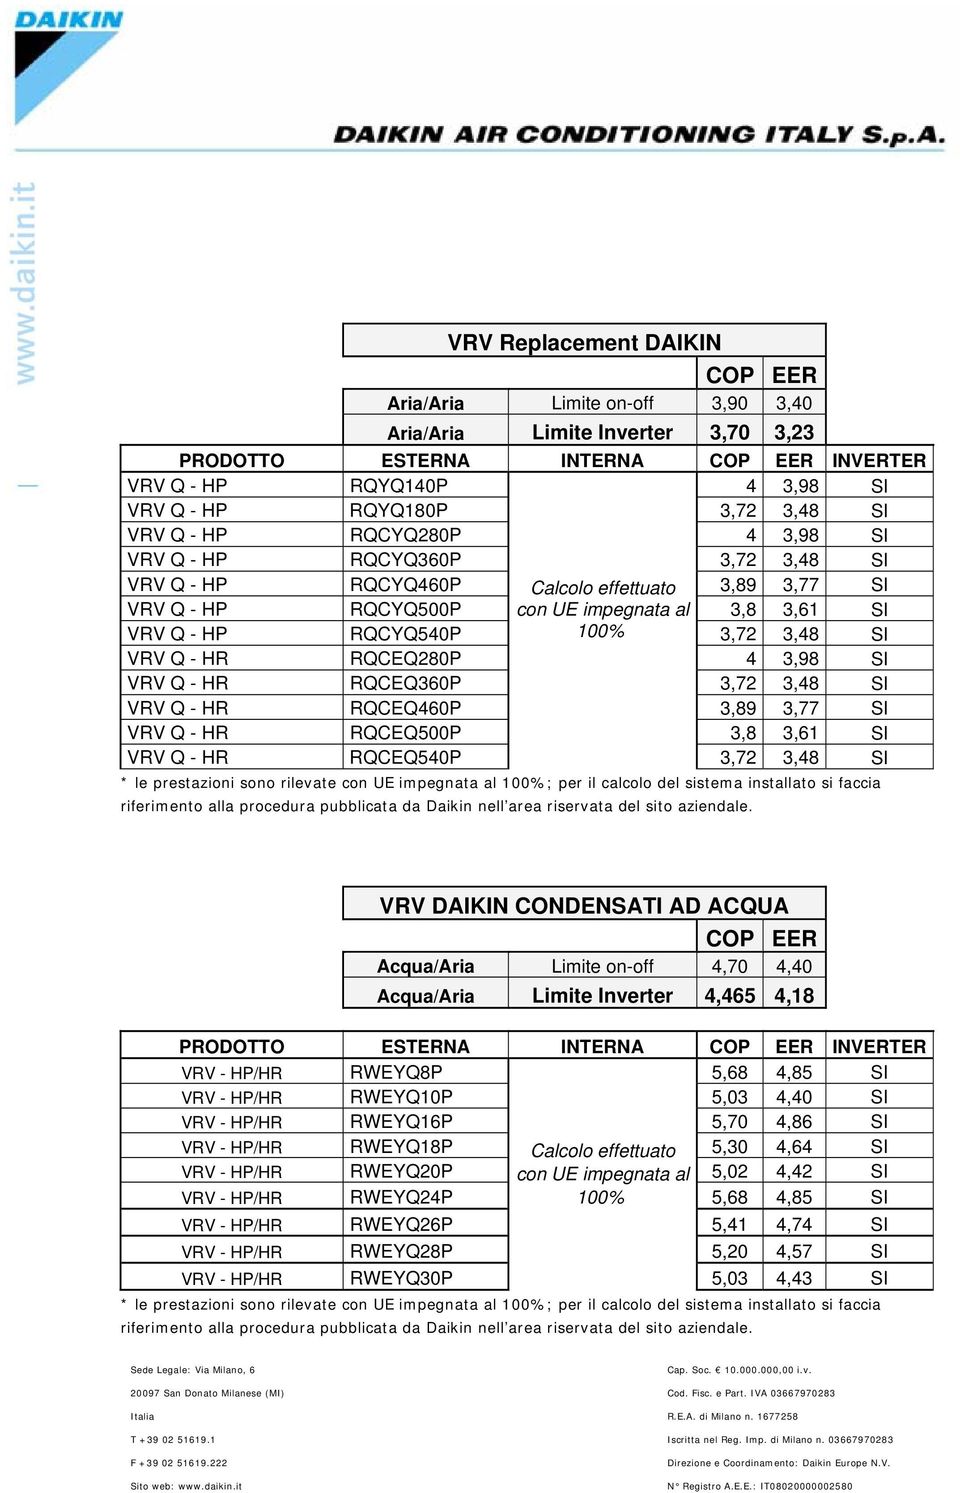 VRV Q - HR RQCEQ460P 3,89 3,77 SI VRV Q - HR RQCEQ500P 3,8 3,61 SI VRV Q - HR RQCEQ540P 3,72 3,48 SI * le prestazioni sono rilevate con UE impegnata al 100%; per il calcolo del sistema installato si